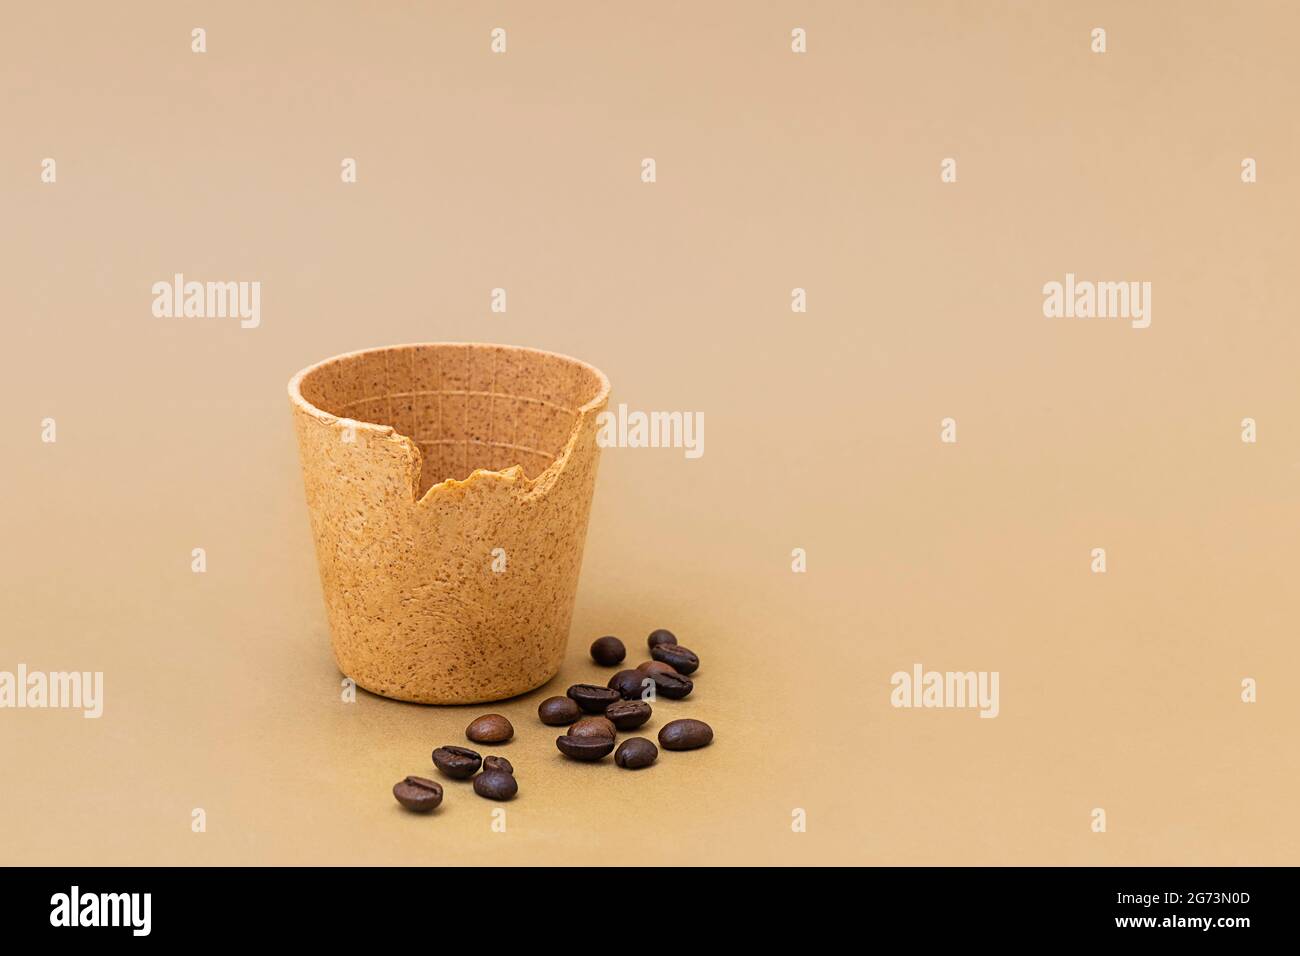 Tasse de café ou de thé avec grains de café torréfiés sur fond beige. Les tasses comestibles comme nouvelle tendance zéro déchet Banque D'Images